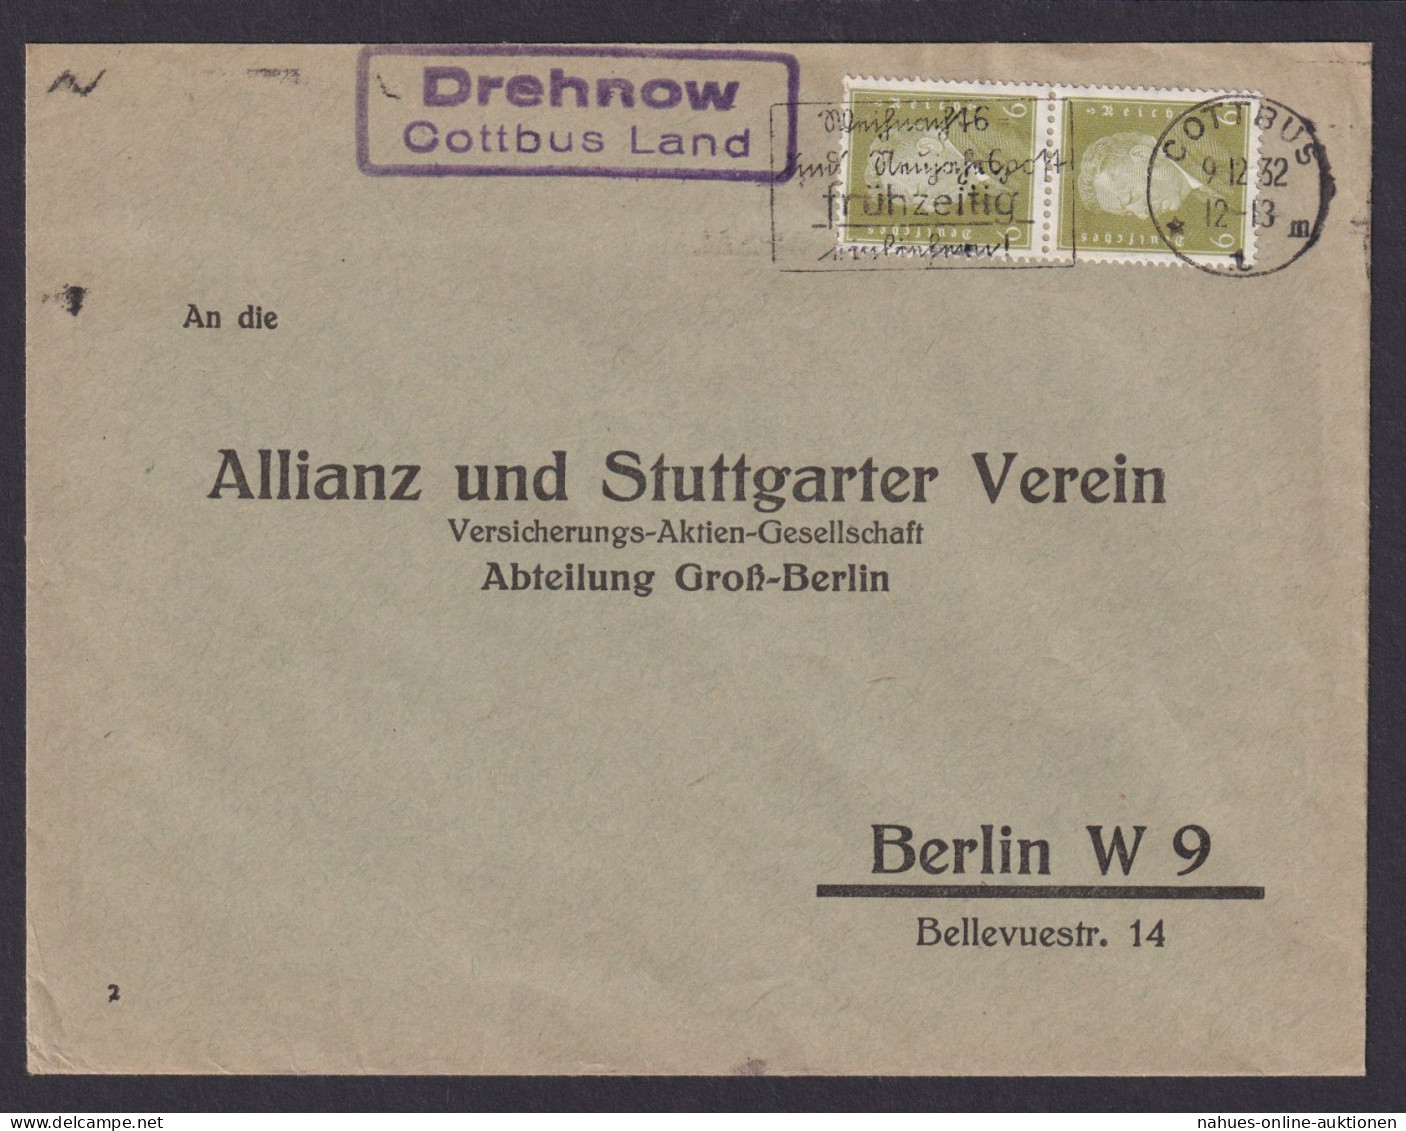 Drehnow über Cottbus Land Brandenburg Deutsches Reich Brief Landposstempel - Covers & Documents